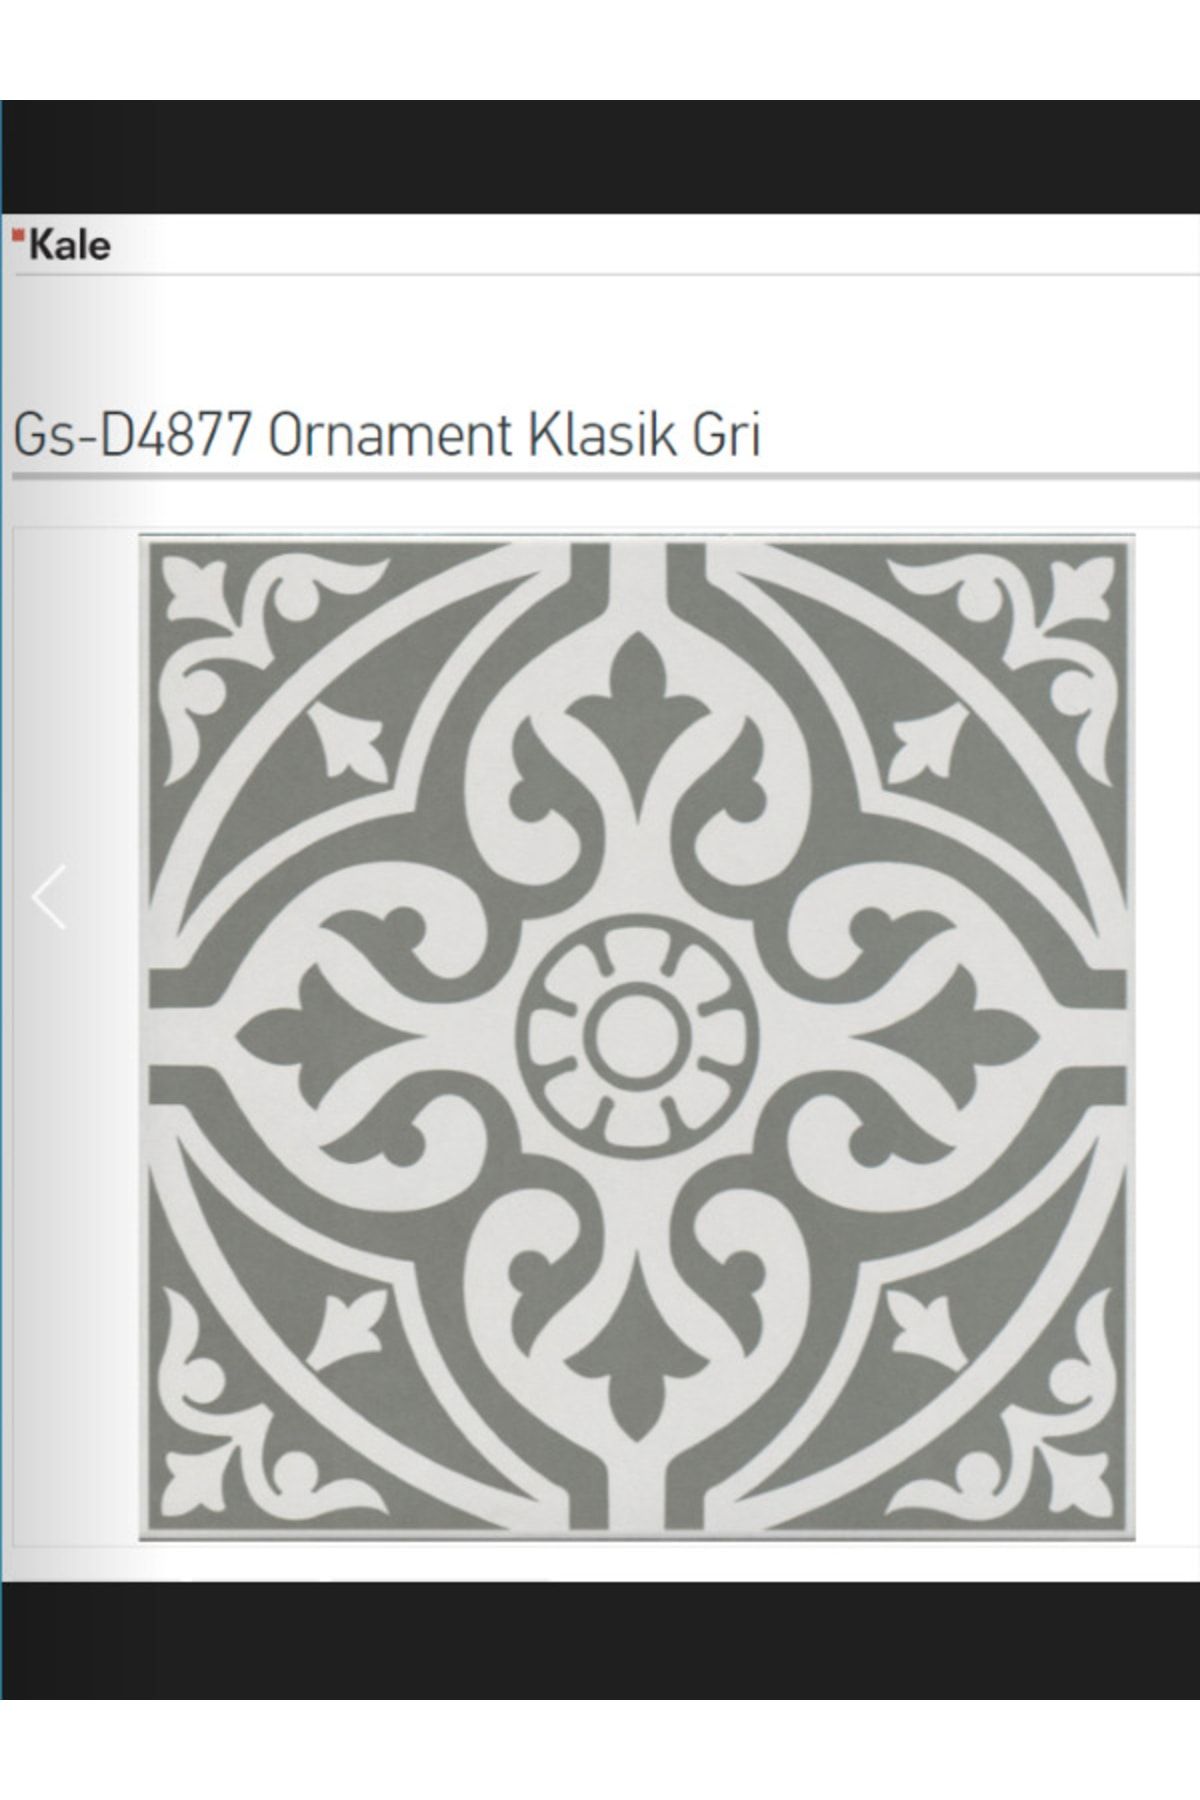 KALE Ornoment Classic Gri 33x33 Gs-d4877